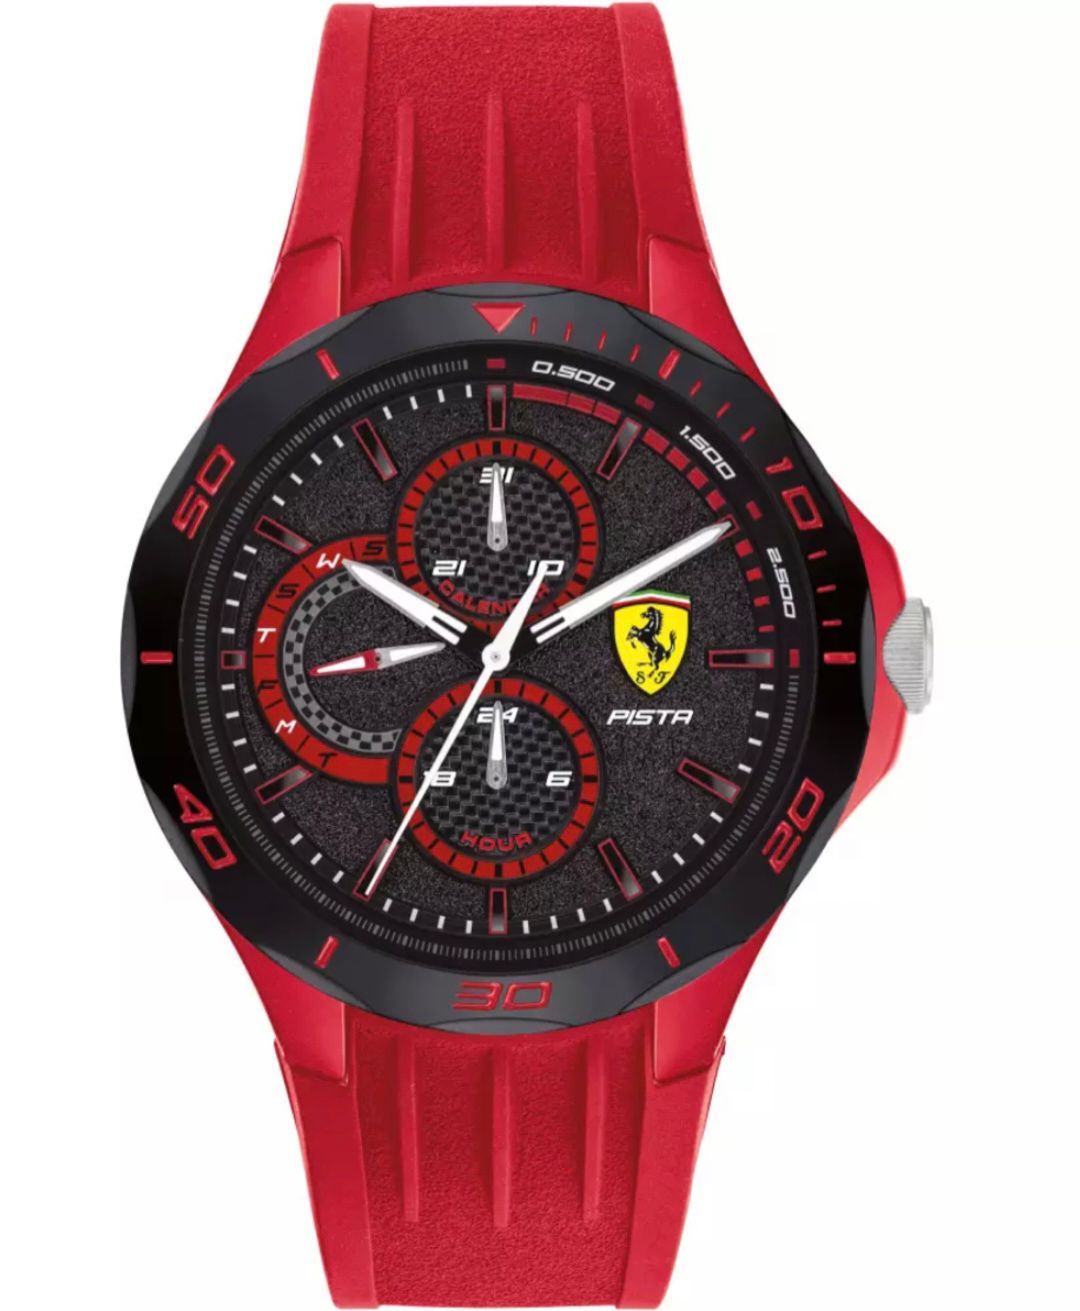 Orologio Ferrari Pista - Gioielleri Iarlori